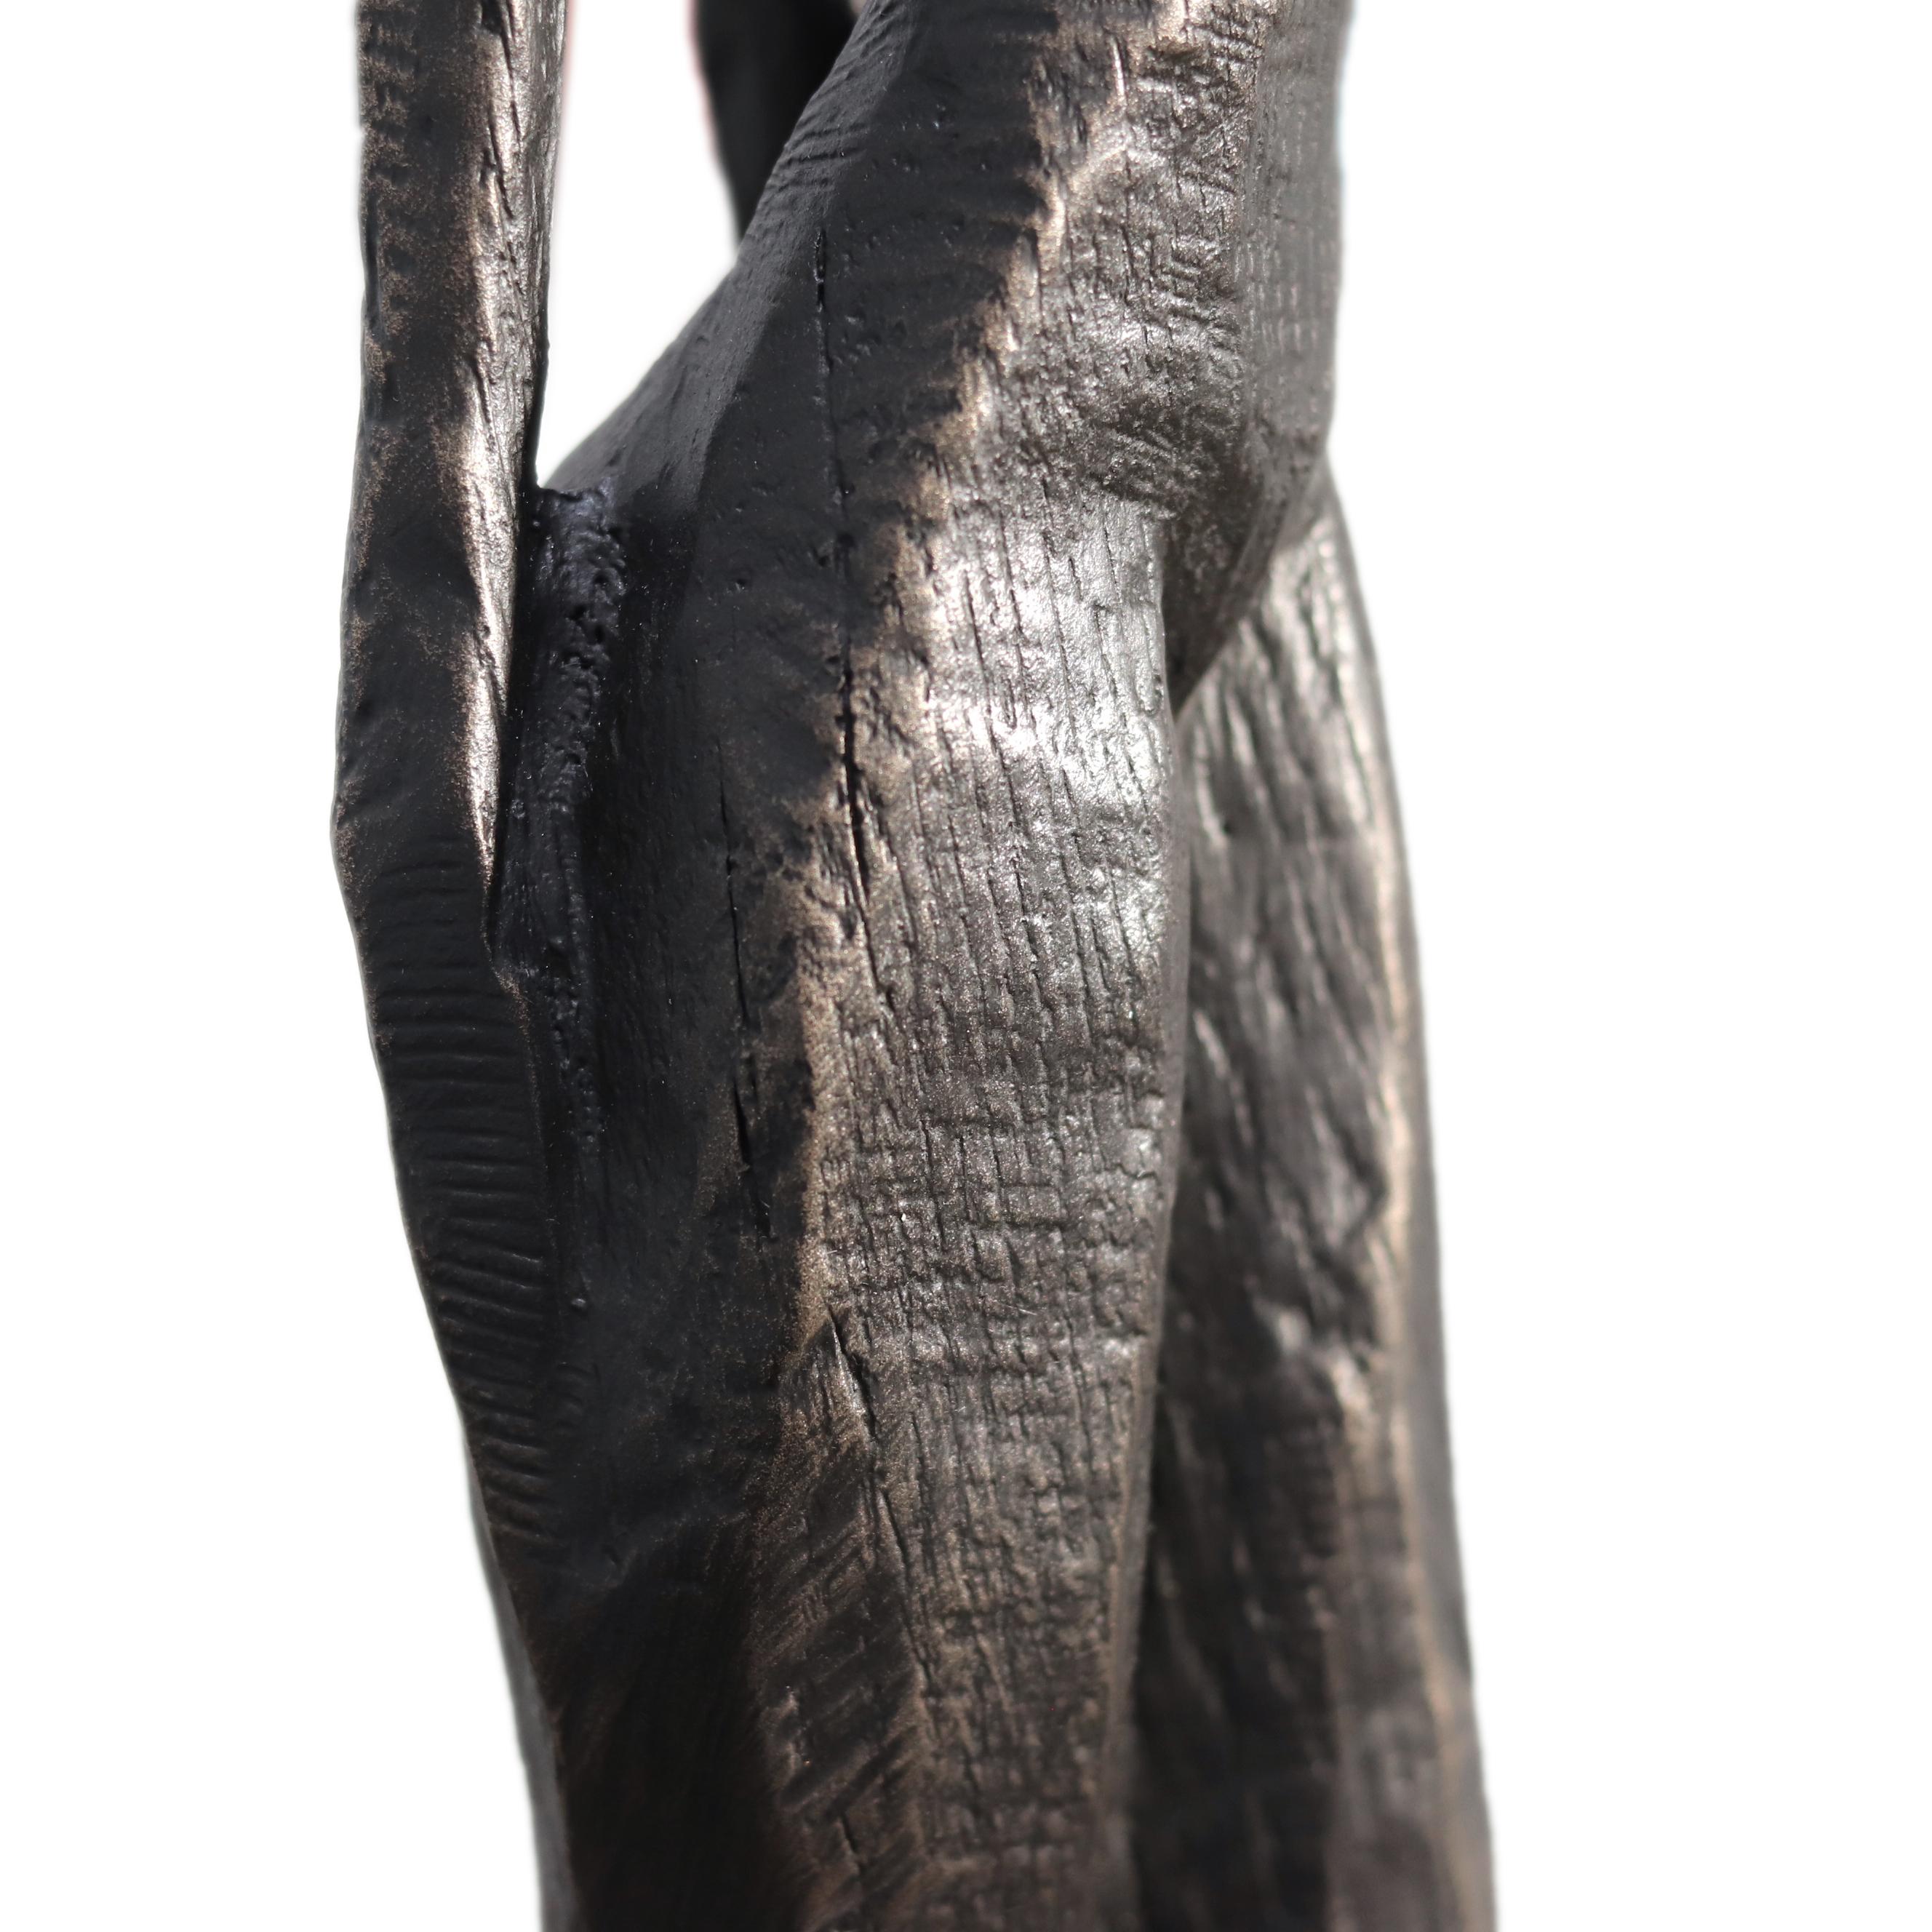 Nathalie - Große hohe figurative moderne abstrakte Skulptur aus massiver Bronze im abstrakten Kubismus – Sculpture von Nando Kallweit